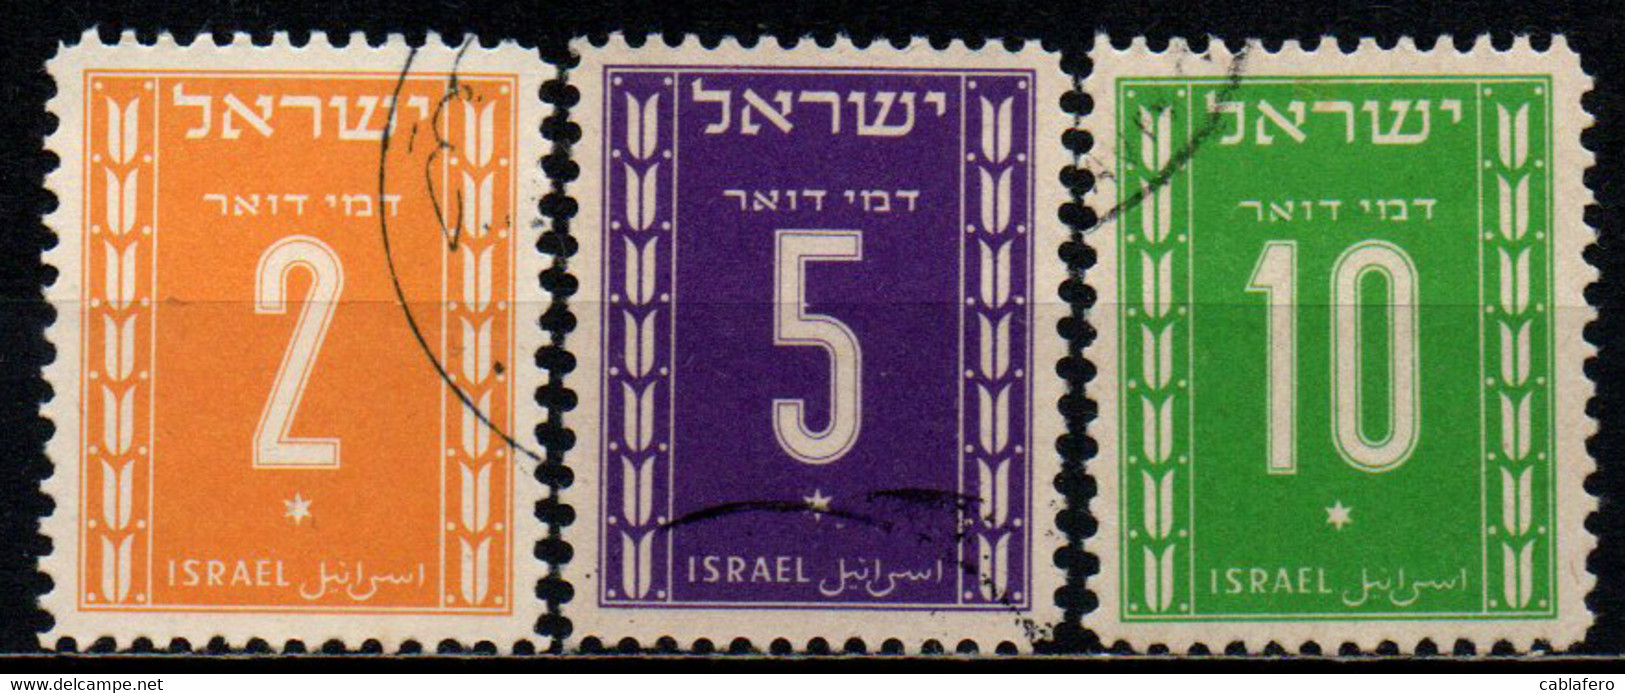 ISRAELE - 1949 - Numeral - USATI - Strafport